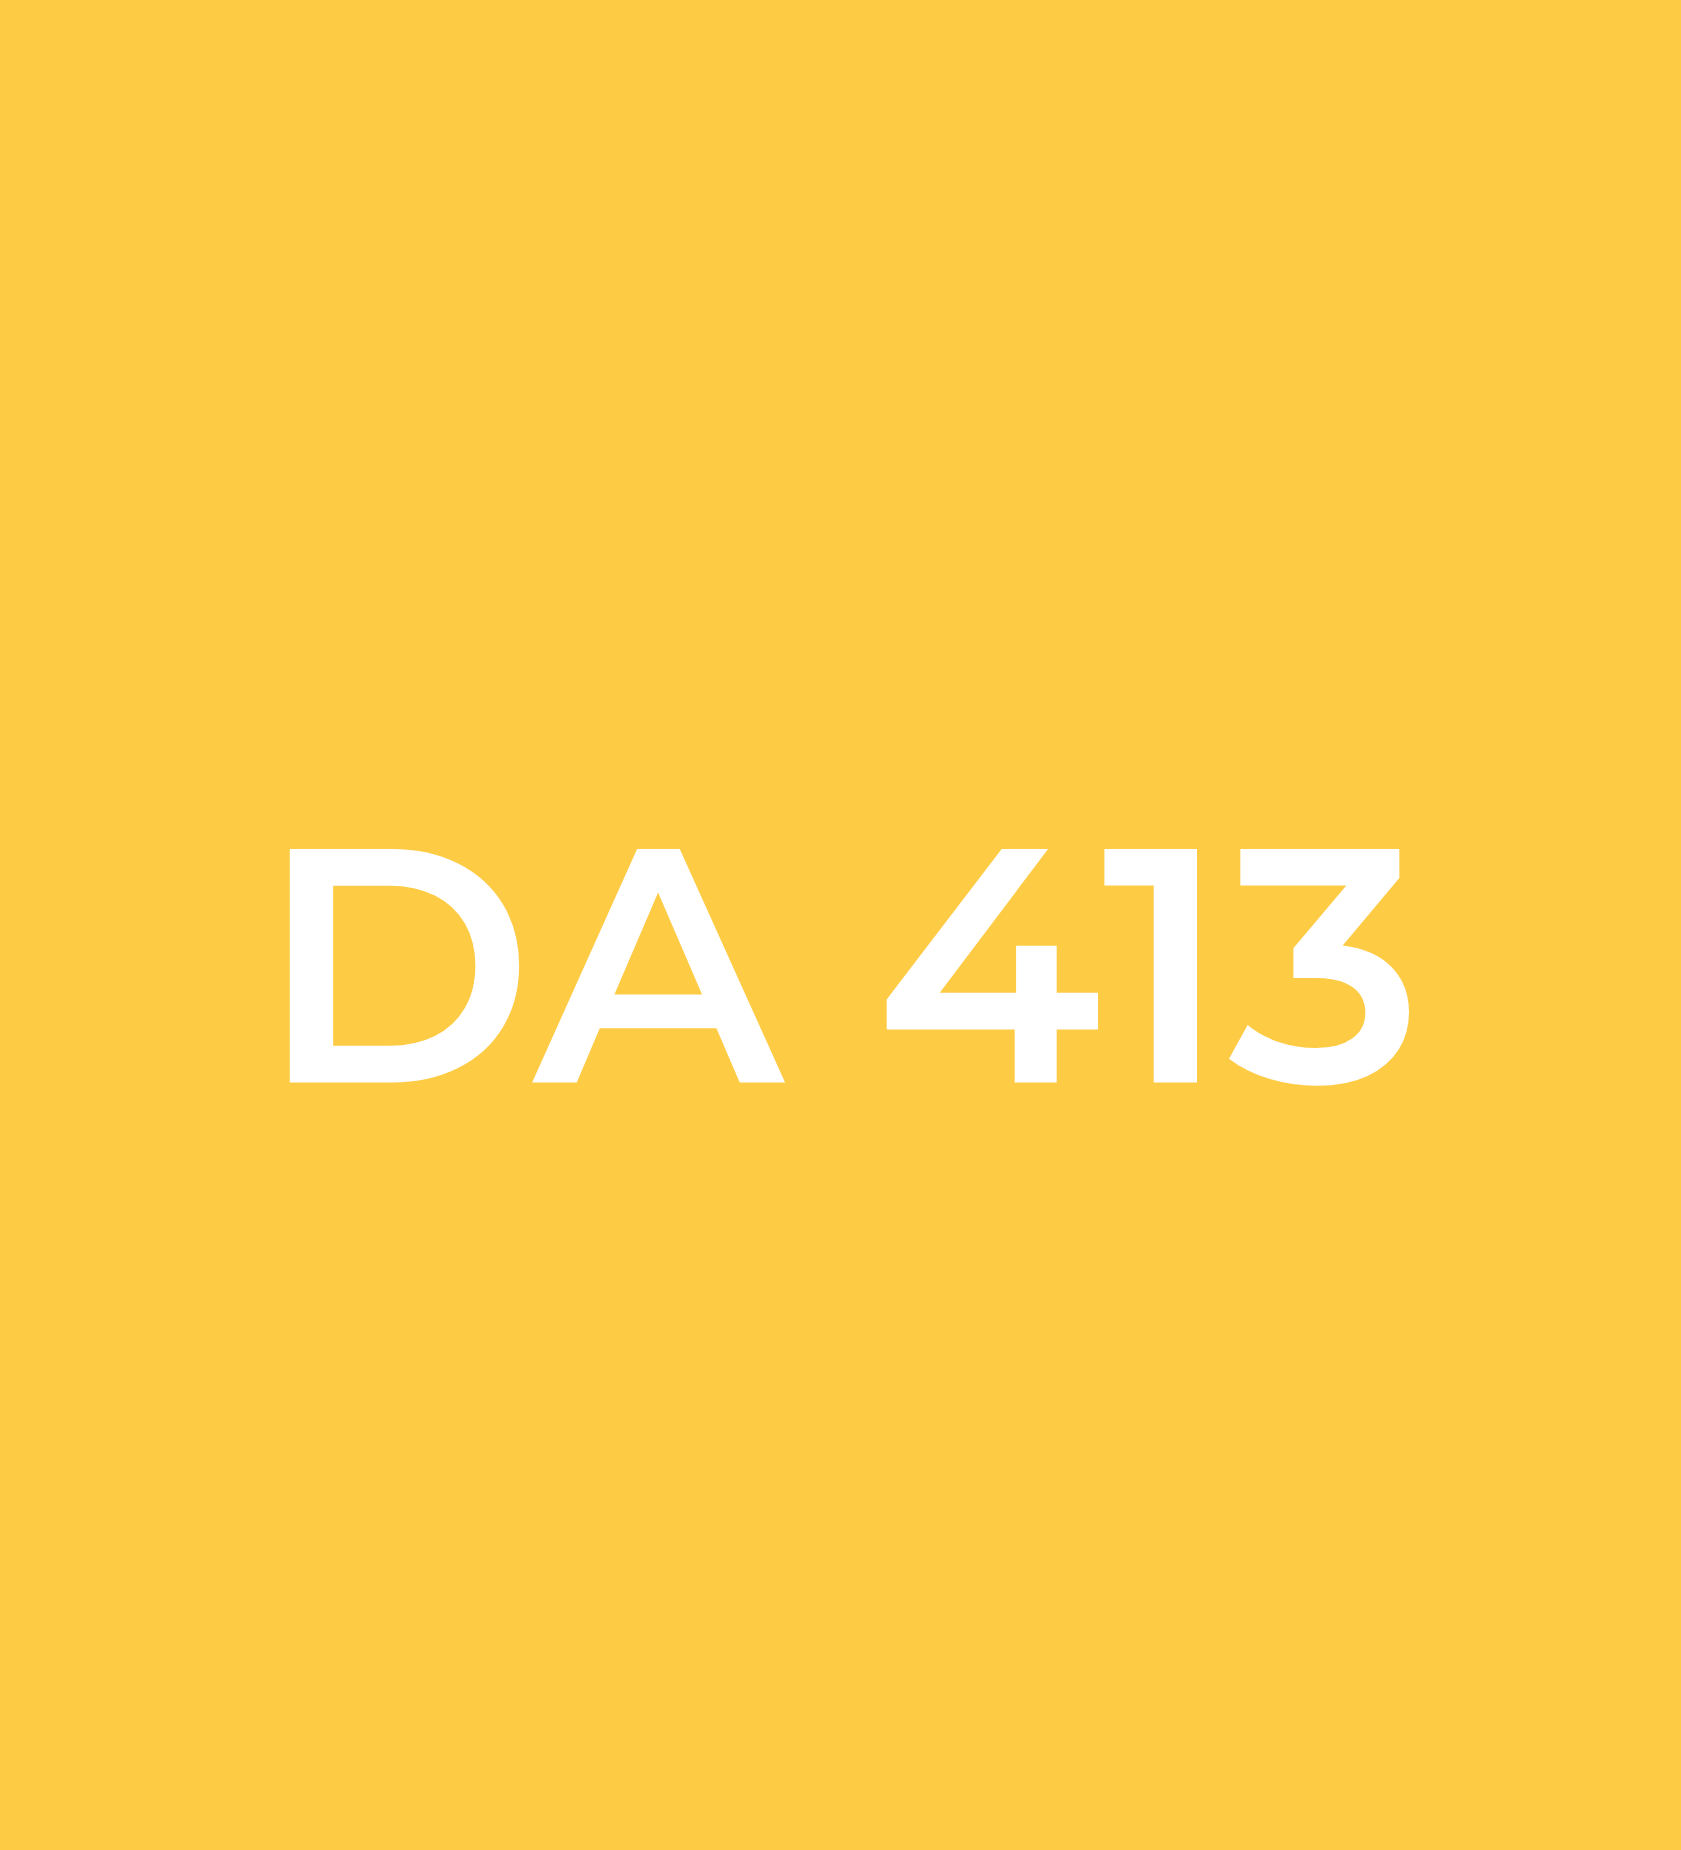 DA 413